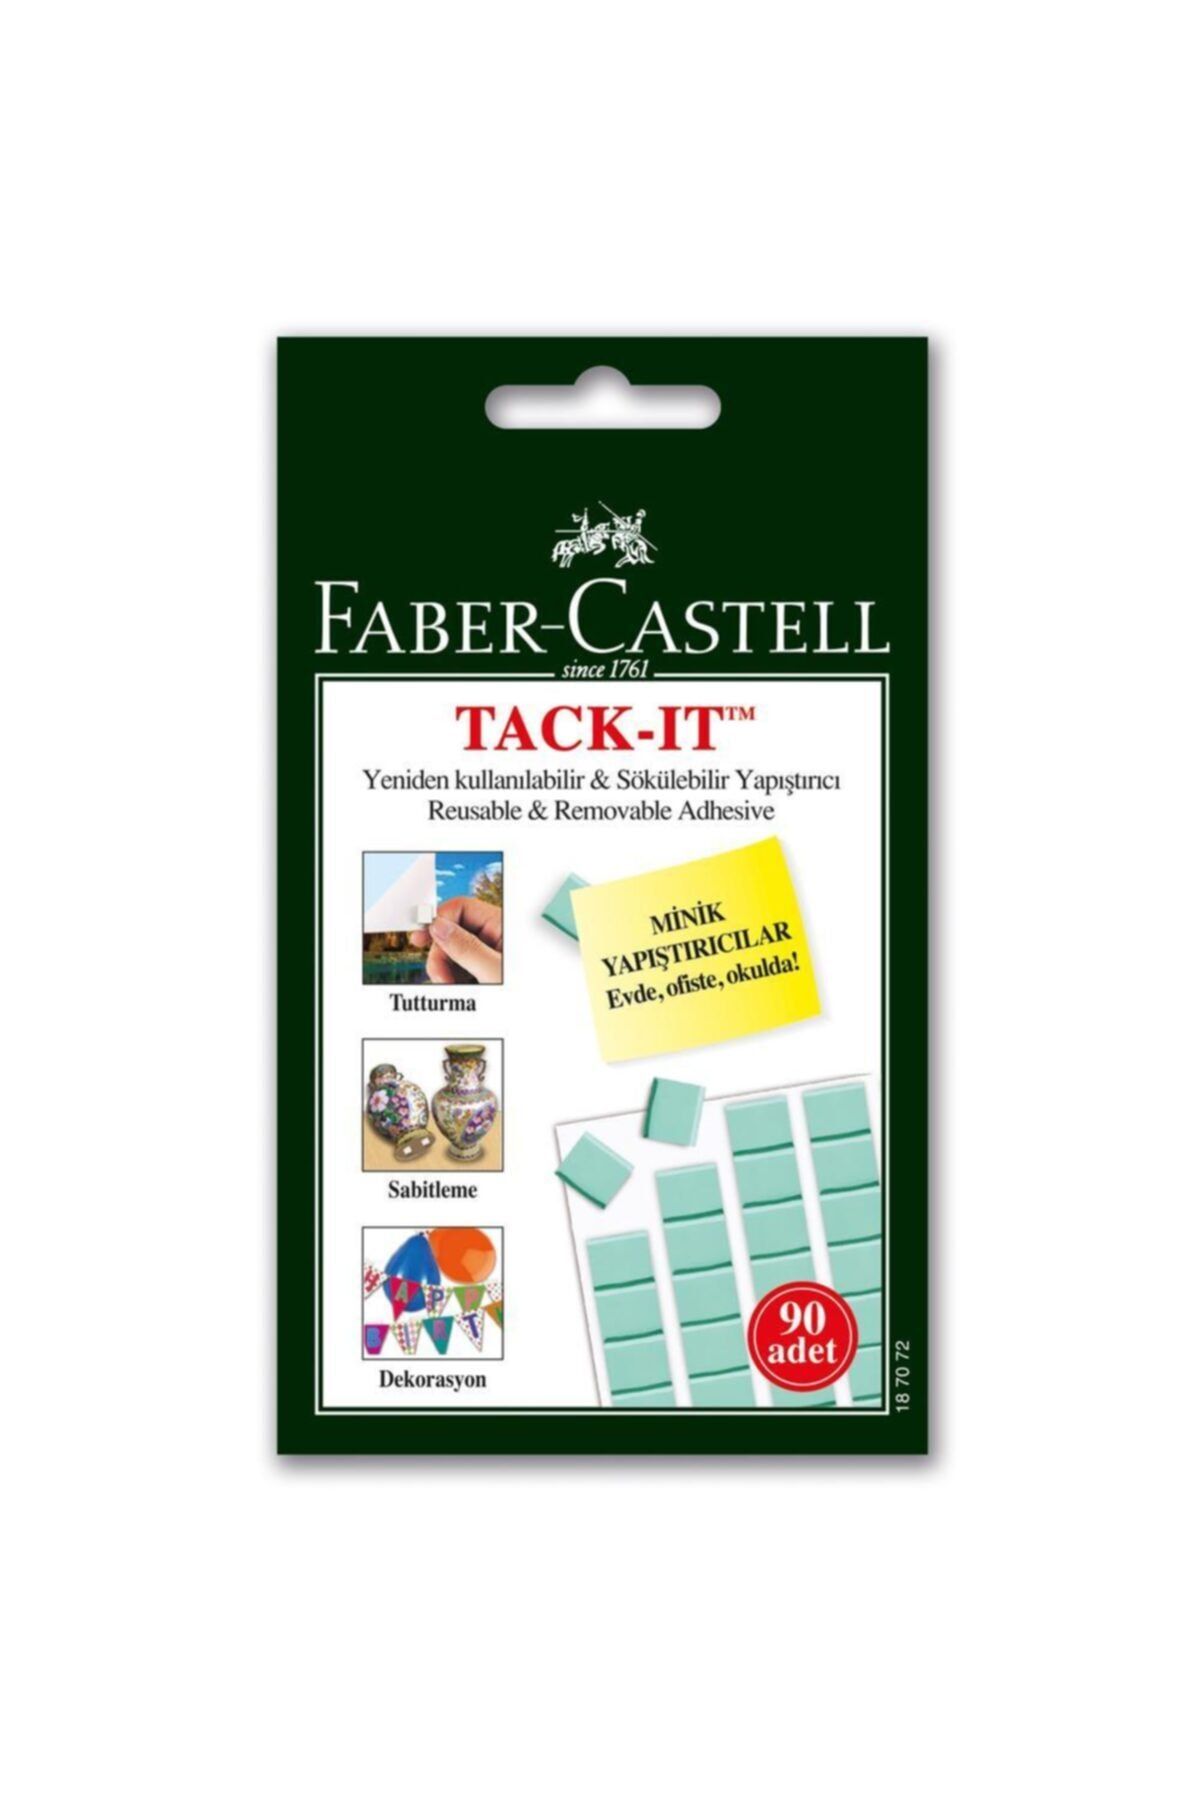 Faber Castell Faber Hamur Yapıstırıcı Tack-ıt 50gr.yesıl(187091)